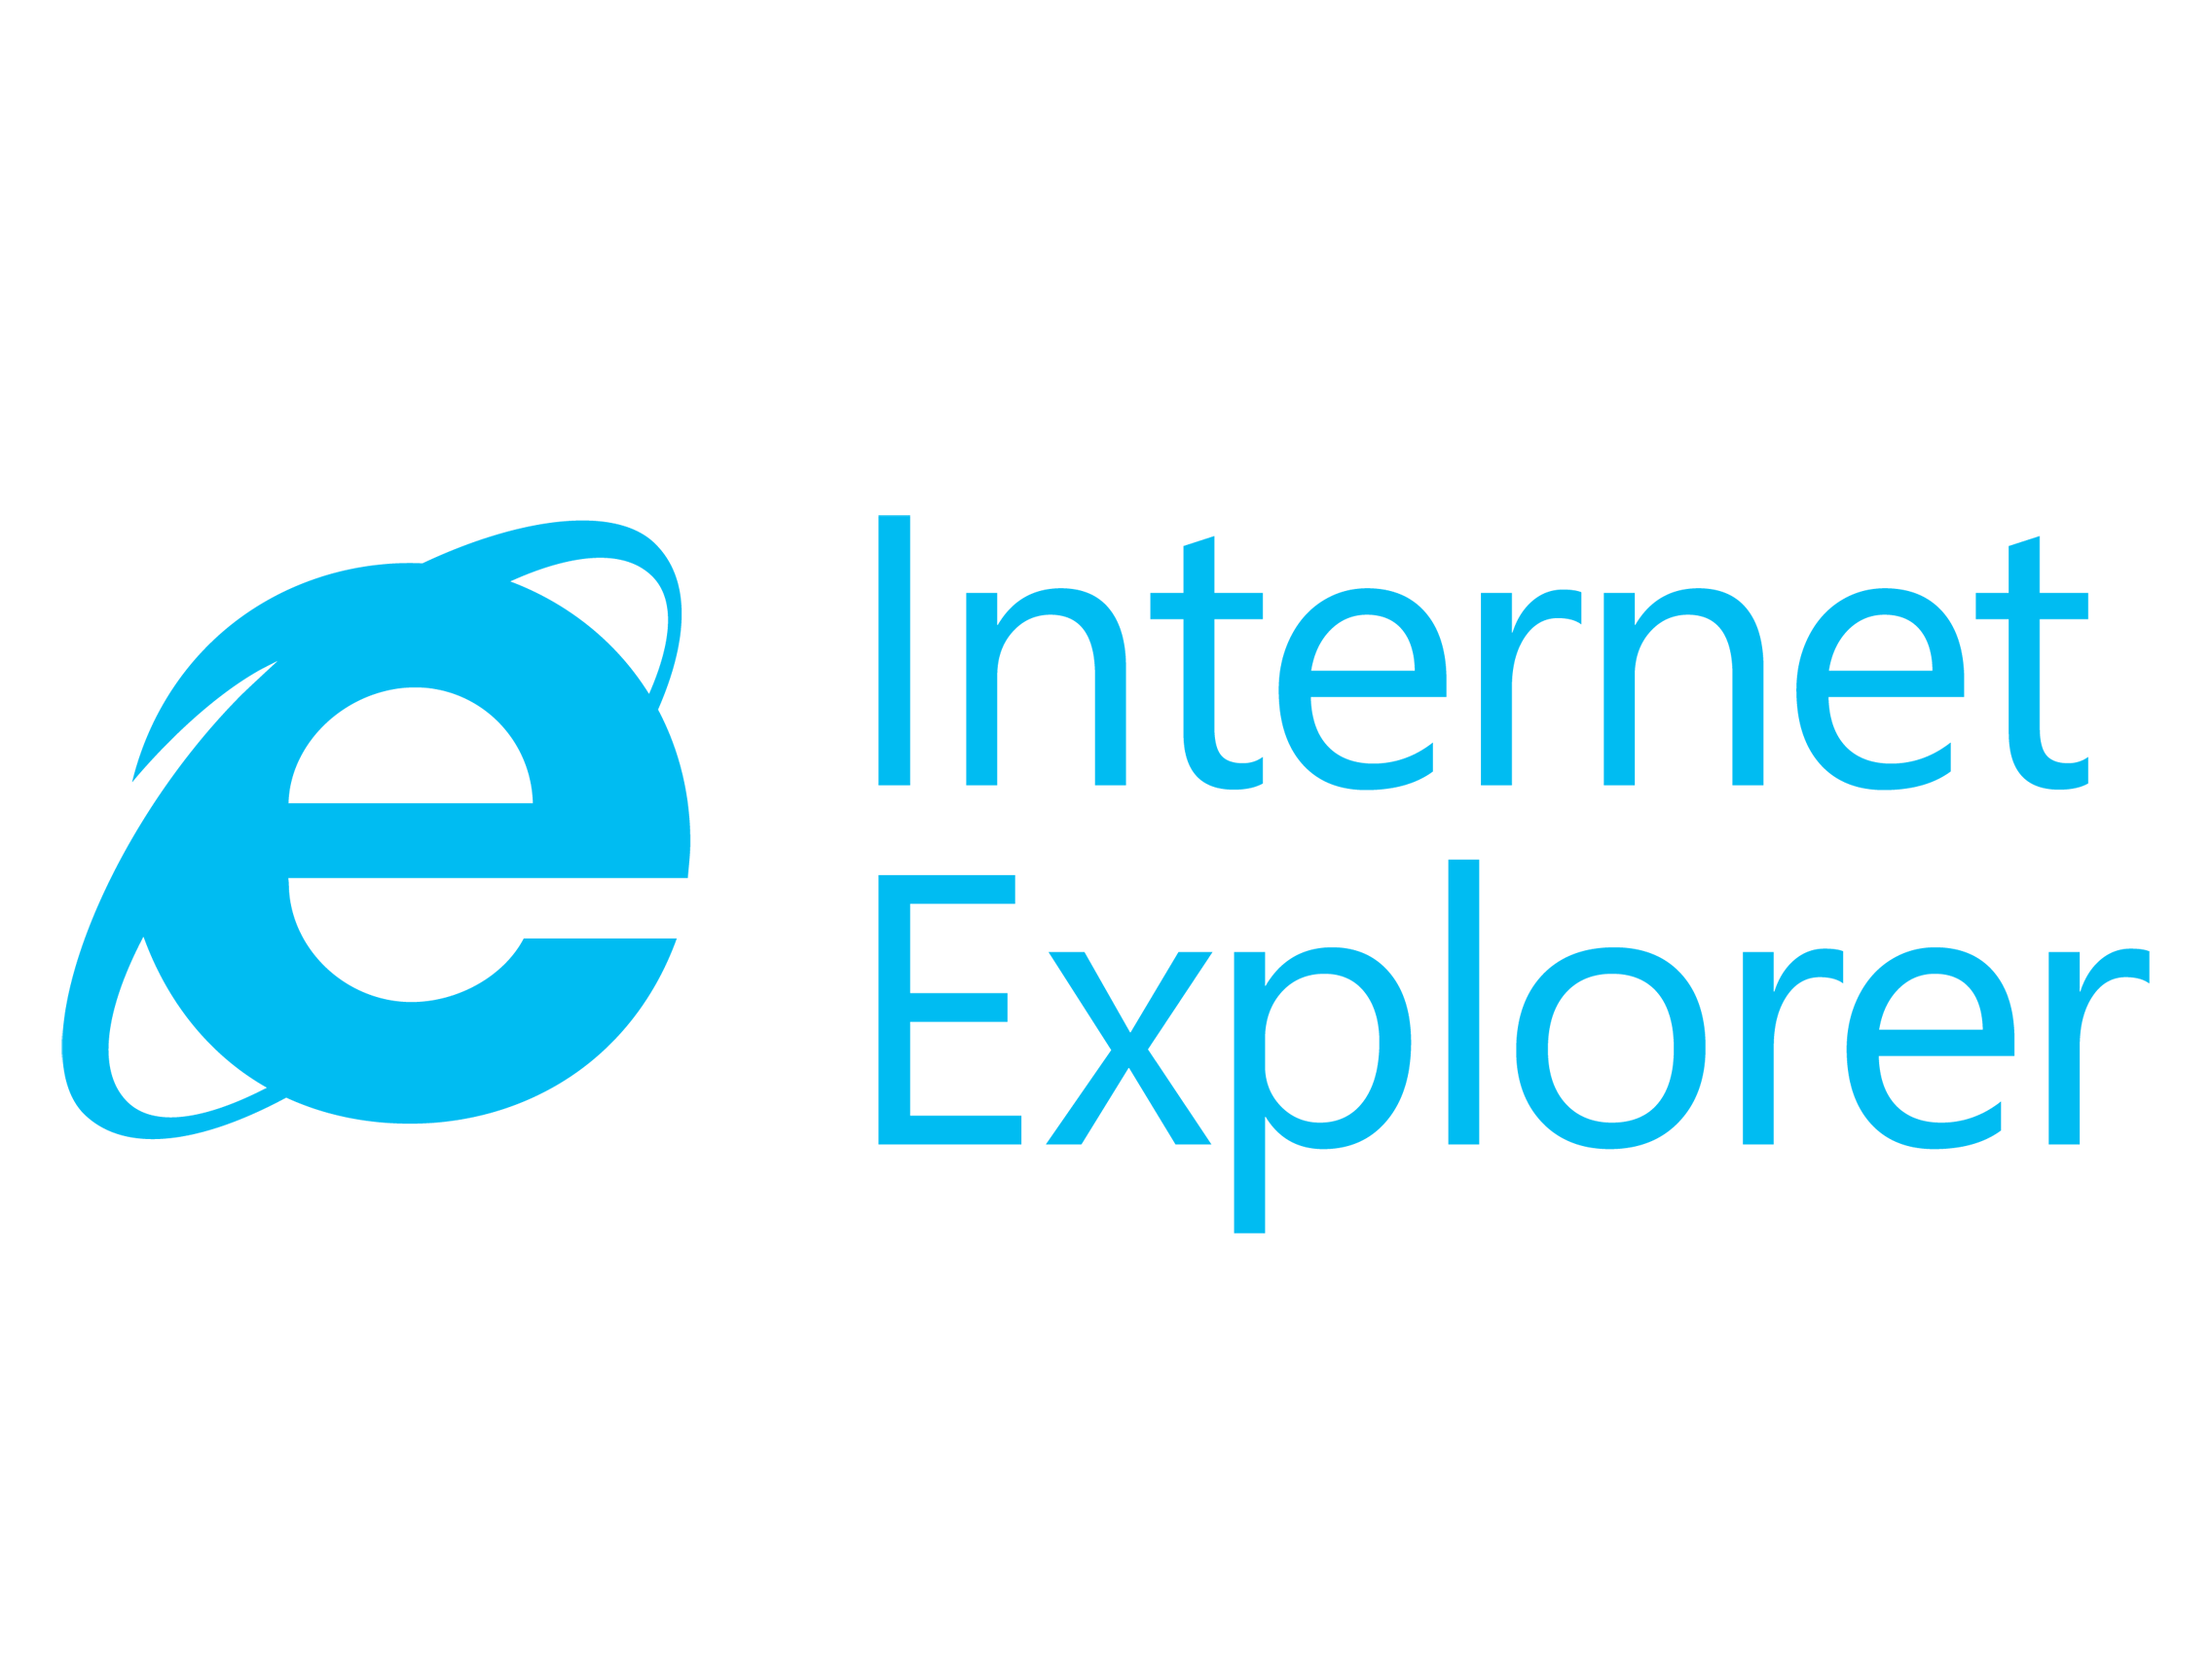 Microsoft Explorer Logo - IE logo